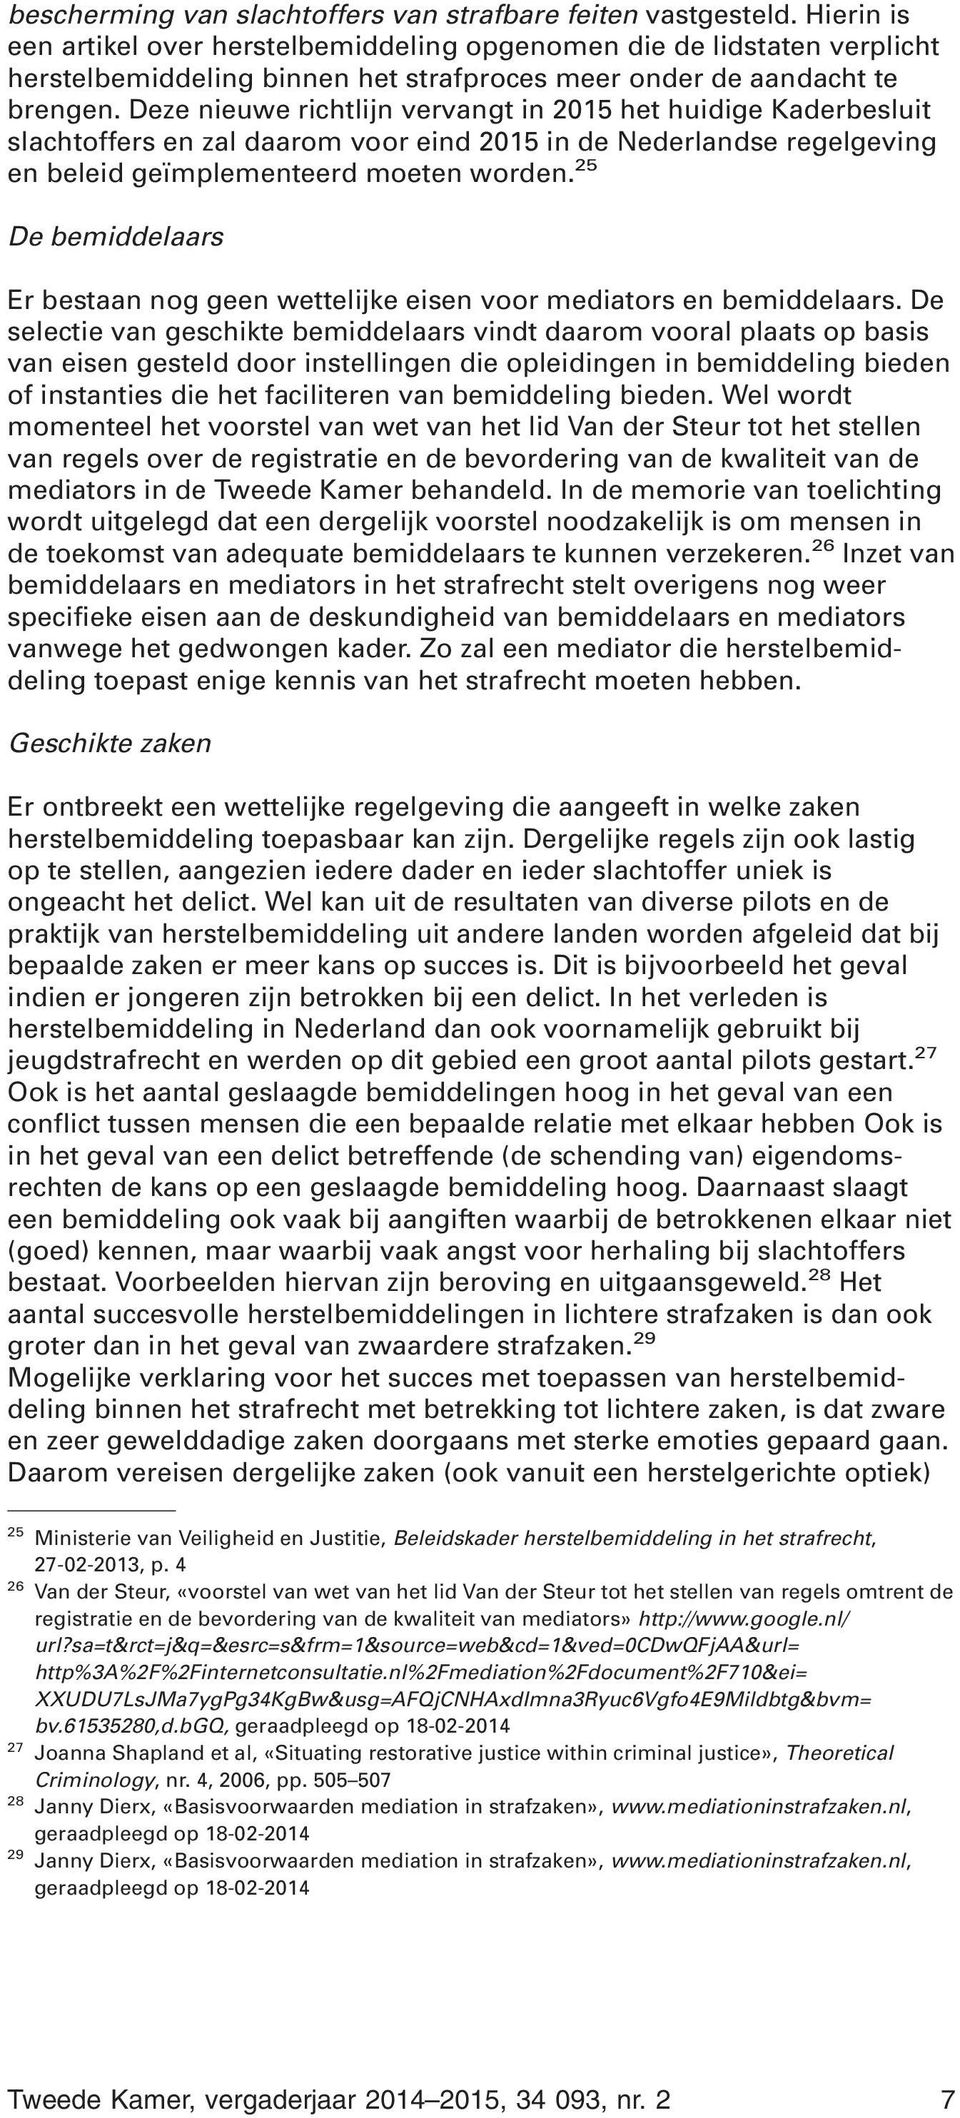 Deze nieuwe richtlijn vervangt in 2015 het huidige Kaderbesluit slachtoffers en zal daarom voor eind 2015 in de Nederlandse regelgeving en beleid geïmplementeerd moeten worden.